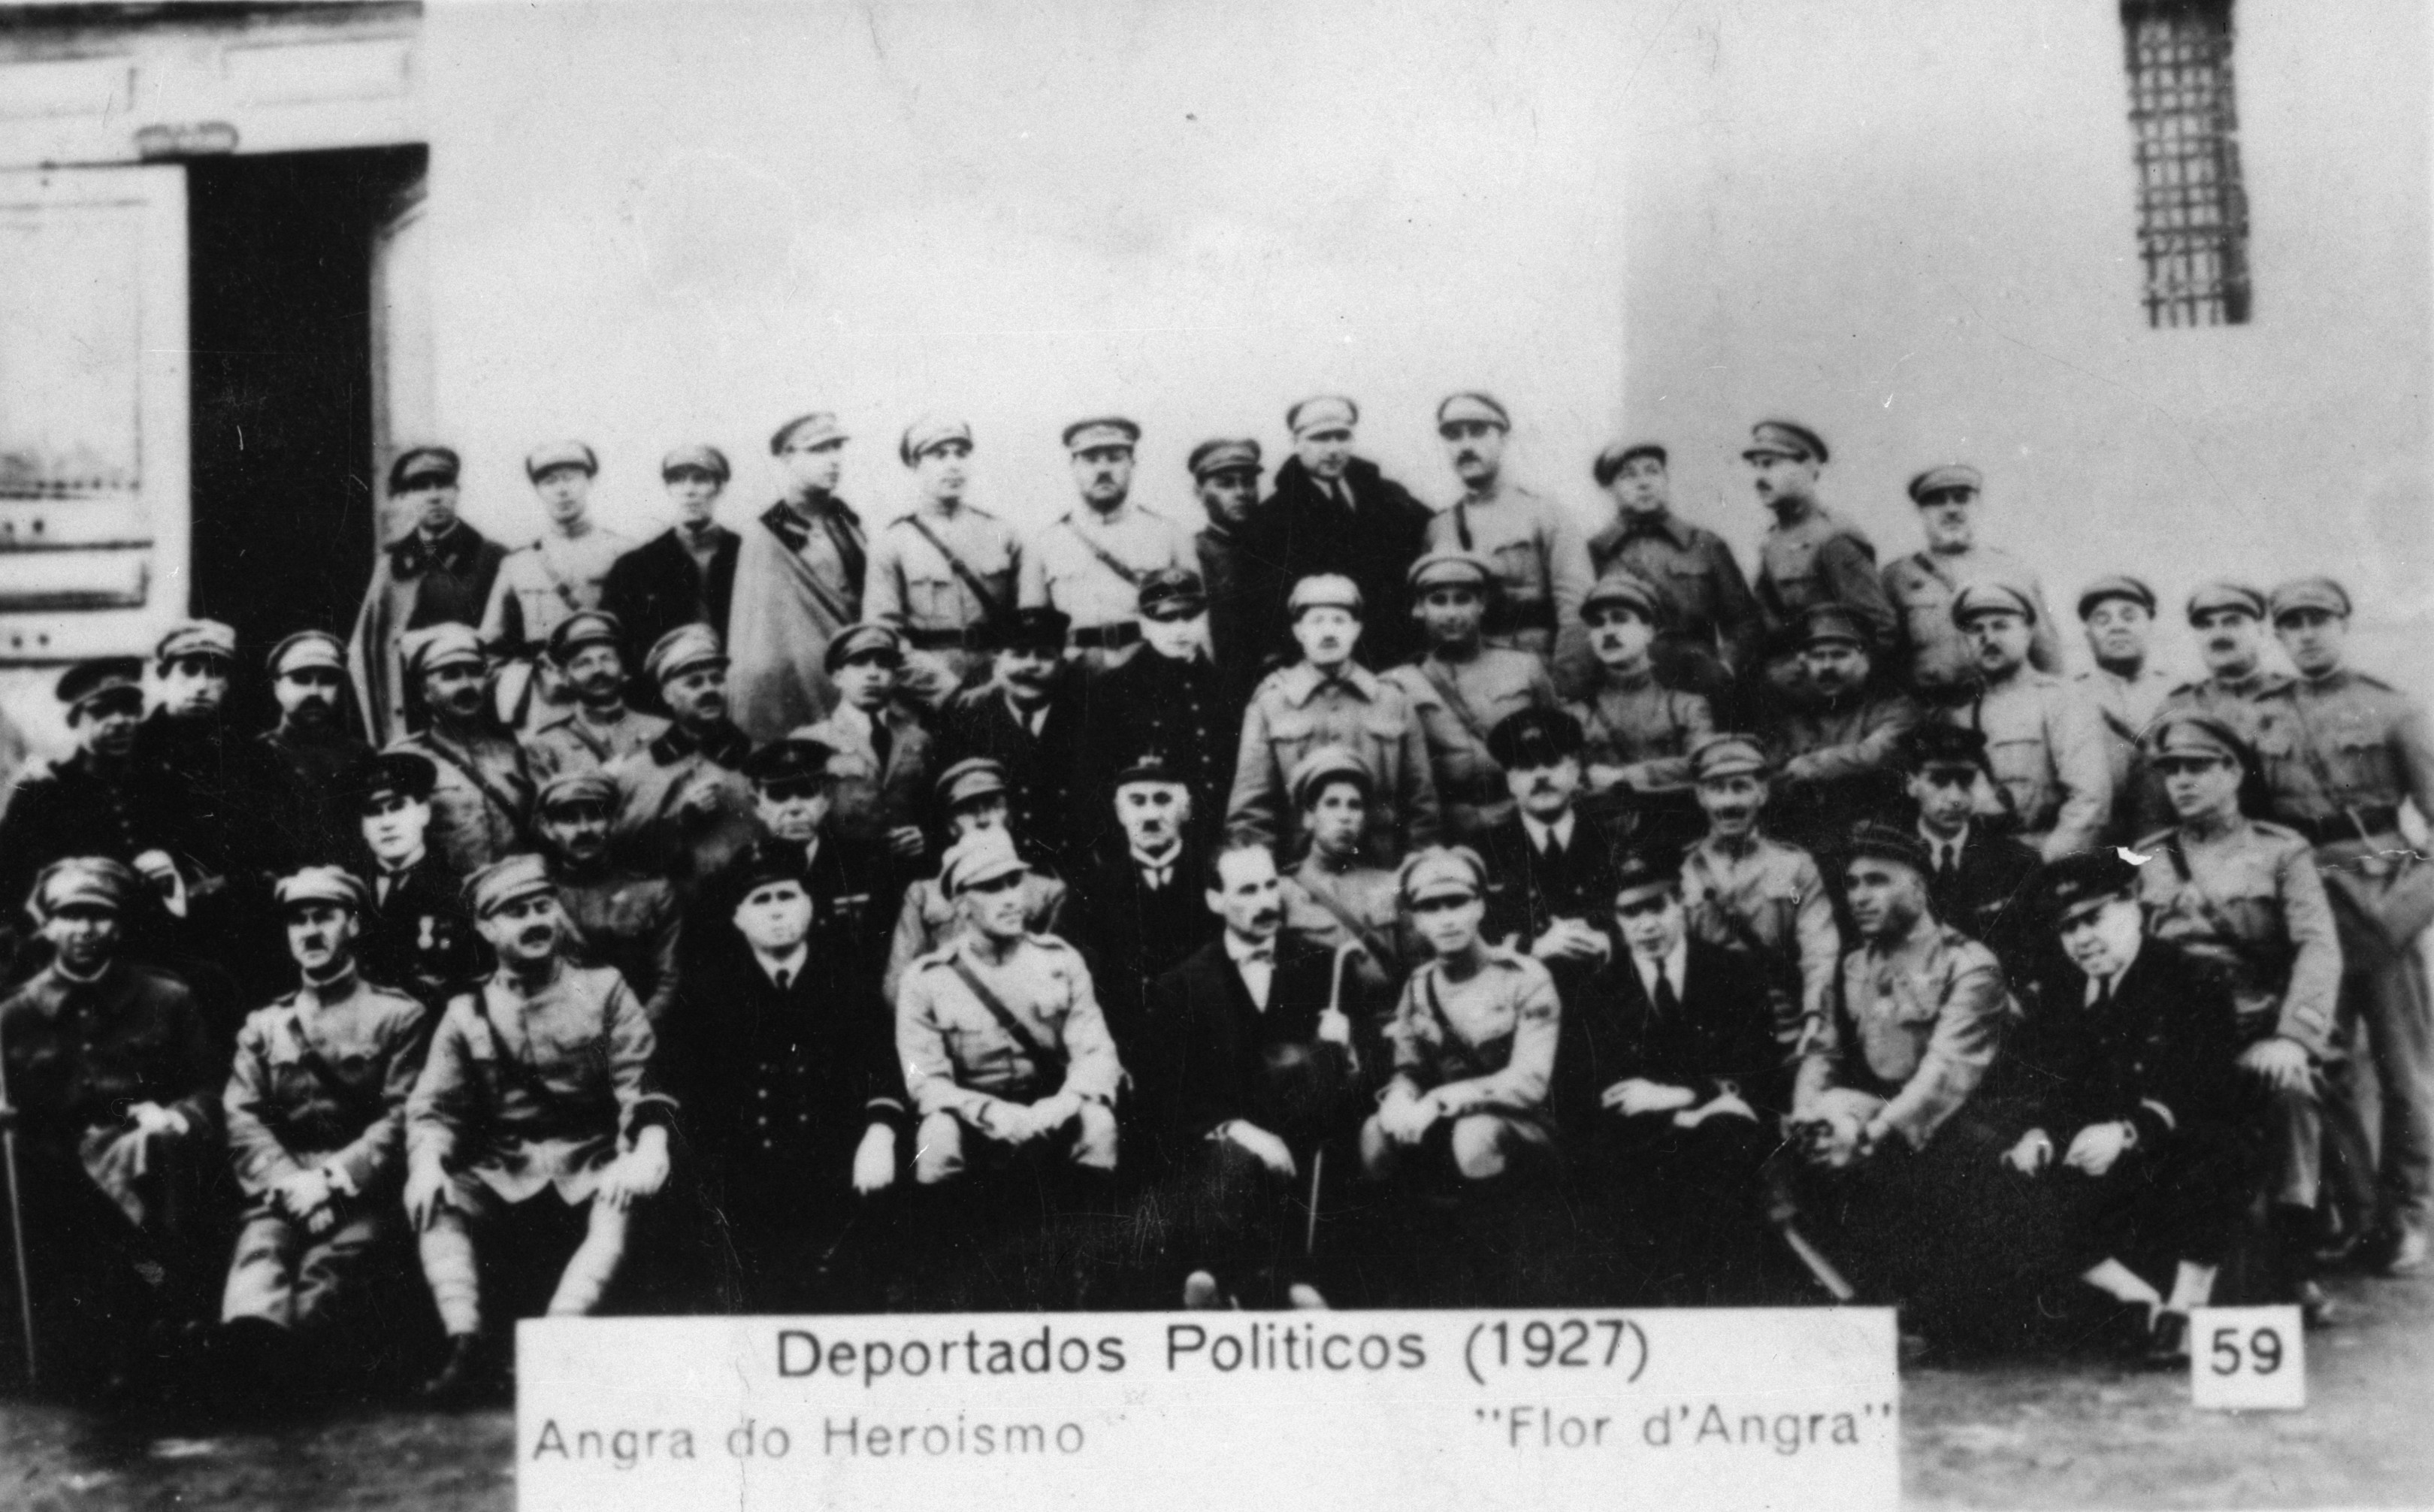 Militares deportados para Angra do Heroísmo após o moviemnto de 1927